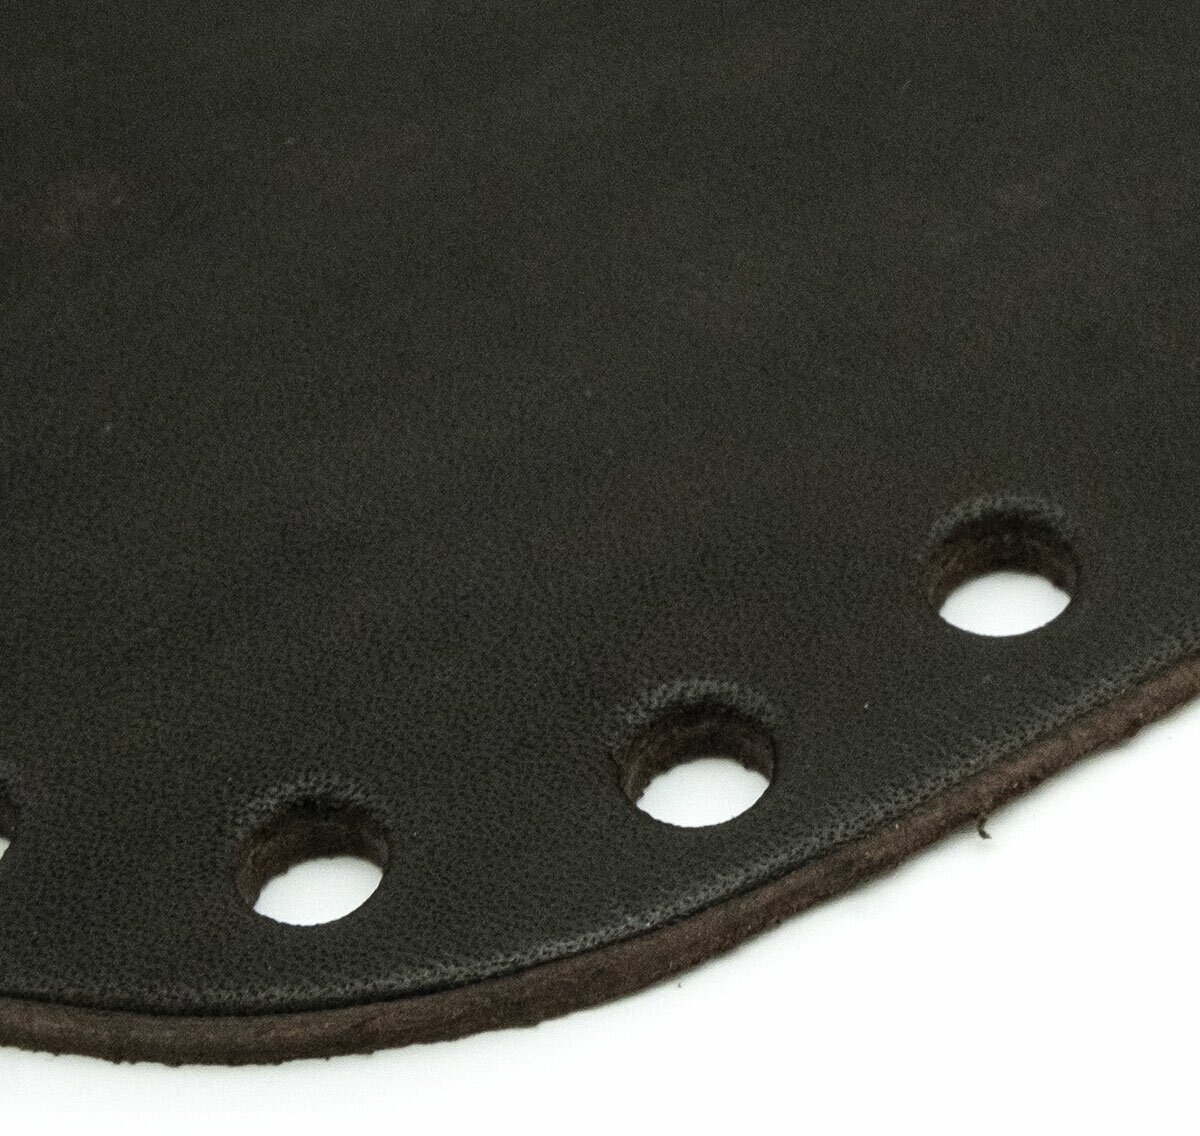 Дно для сумки кожаное 20,5см*8см, толщина 3,5-4мм, дизайн № 502, 100% кожа (чёрный)